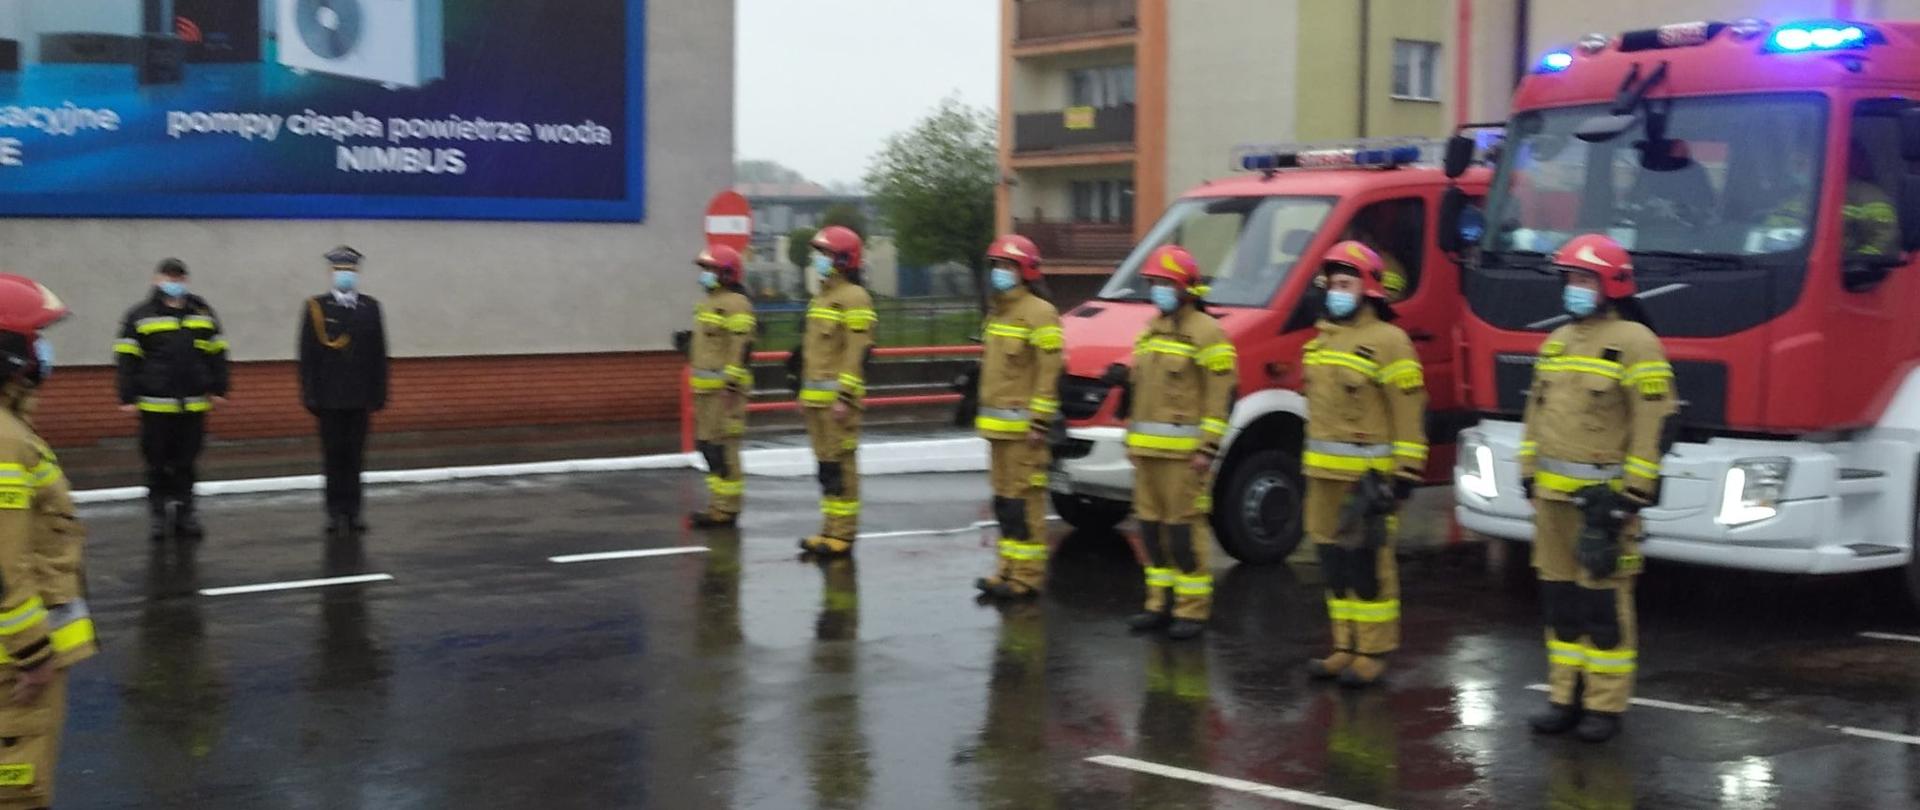 Zdjęcie przedstawia funkcjonariuszy Państwowej Straży Pożarnej, w trakcie uroczystej zmiany służby, w tle dwa pojazdy ratownicze.